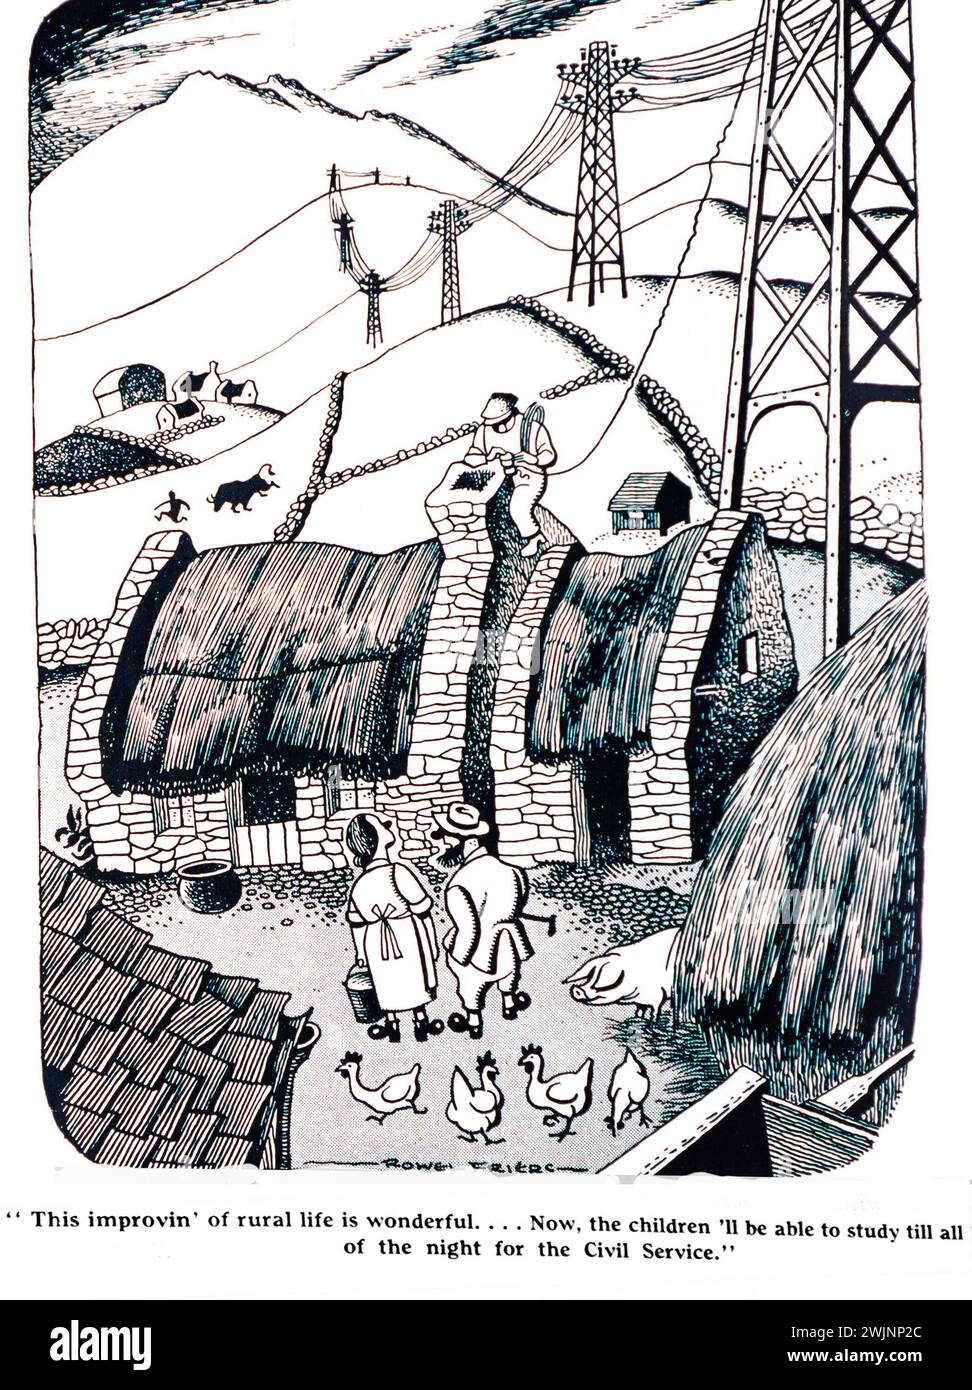 Un cartone animato del Dublin Opinion Magazine che mostra un cottage con tetto di paglia collegato alla rete elettrica come parte del sistema di elettrificazione rurale in Irlanda. Il cartone mostra due persone che accolgono i miglioramenti in modo che i bambini possano stare svegli tutta la notte studiando per il servizio civile. Foto Stock